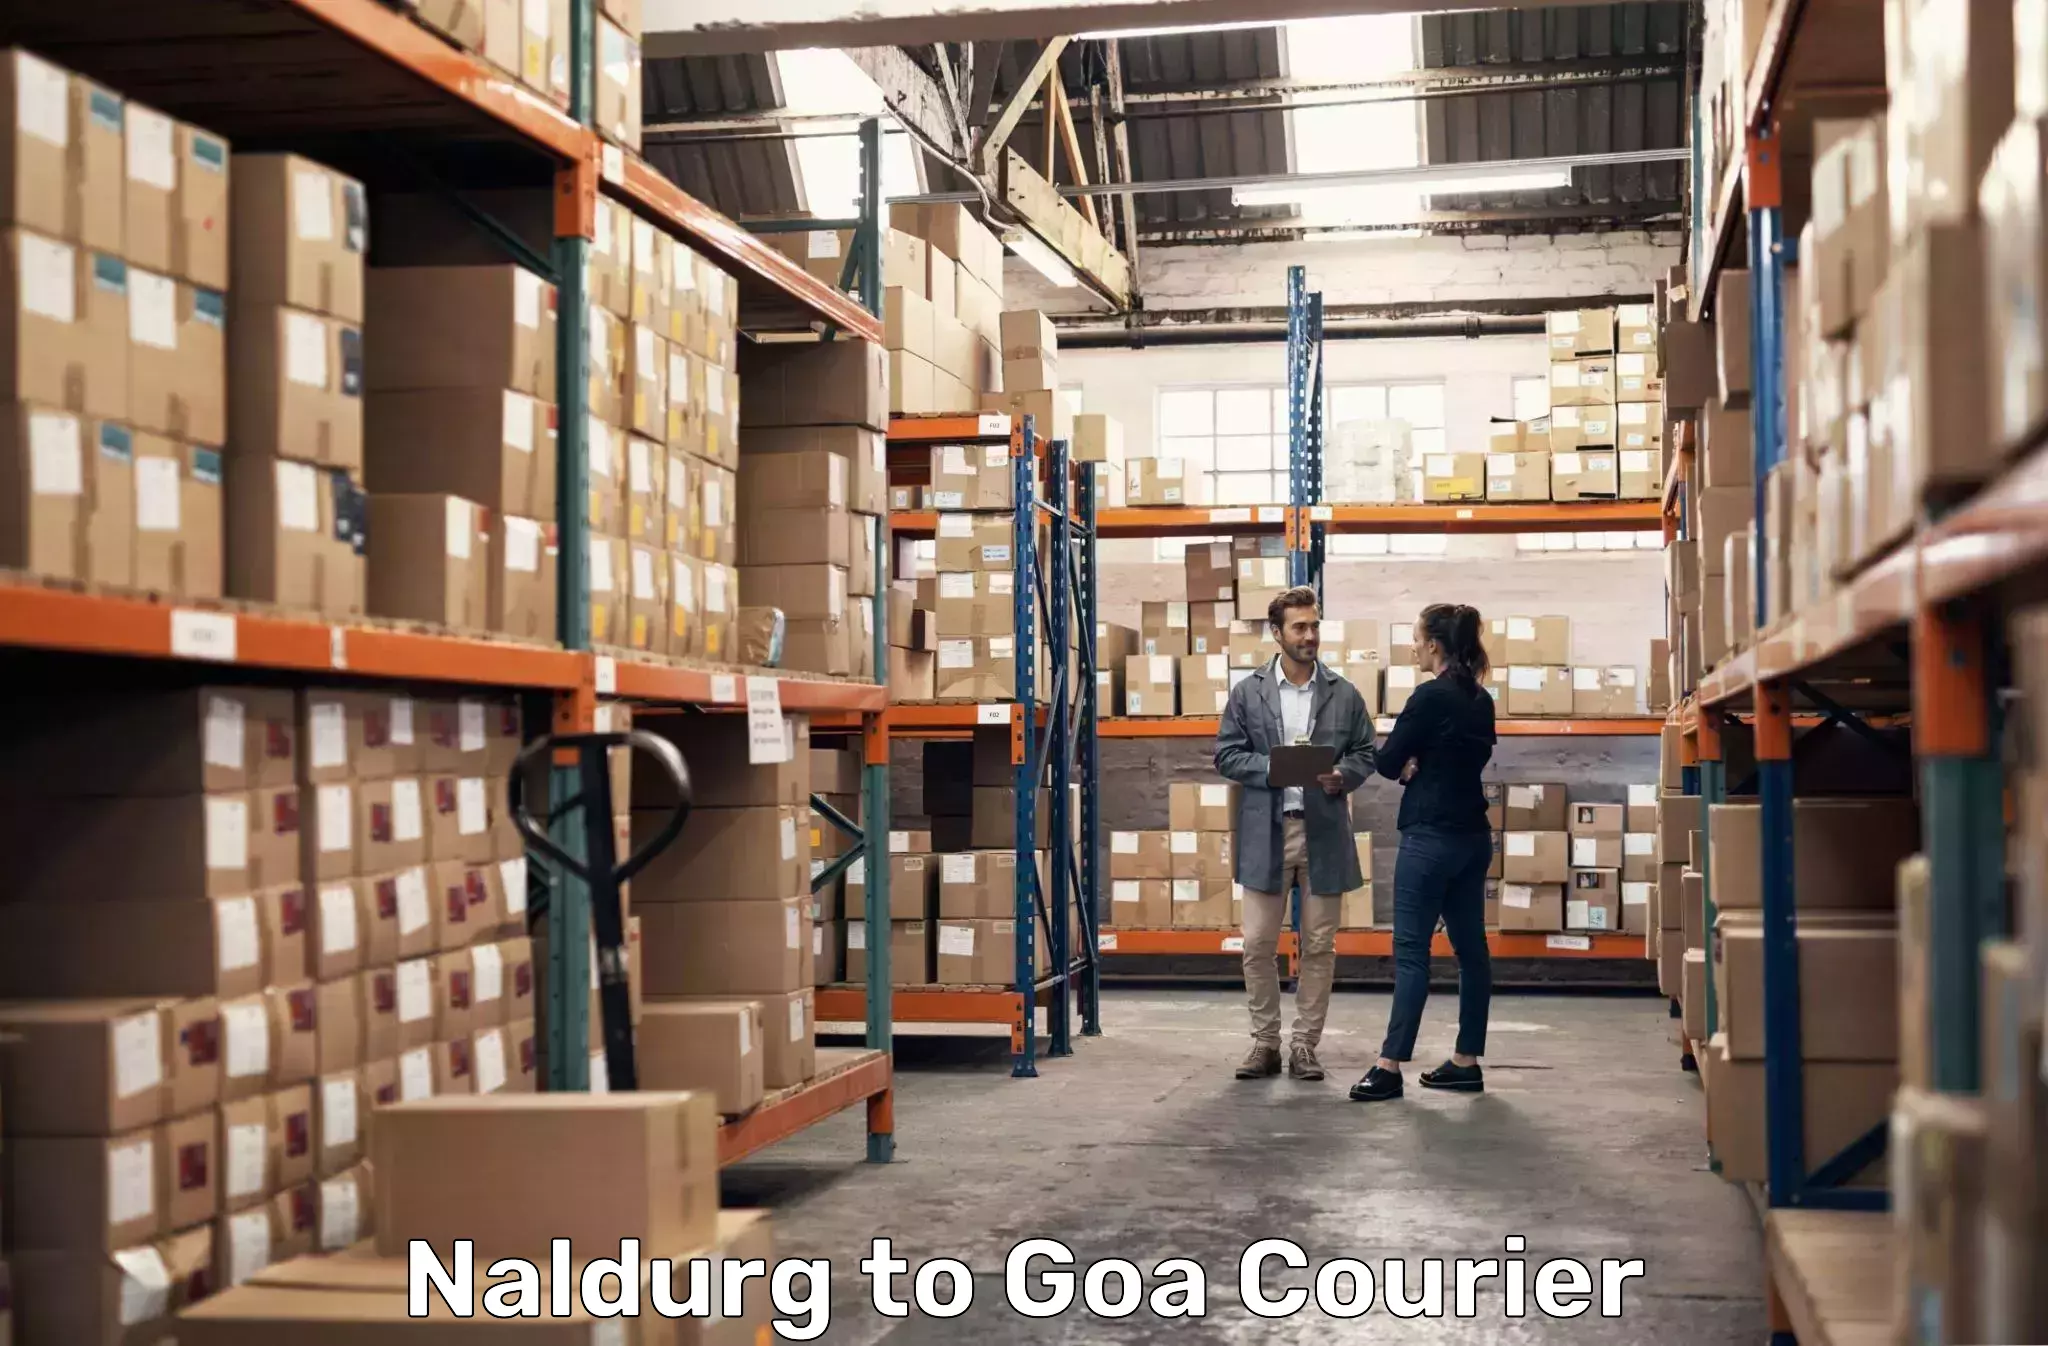 24-hour courier services in Naldurg to Bicholim